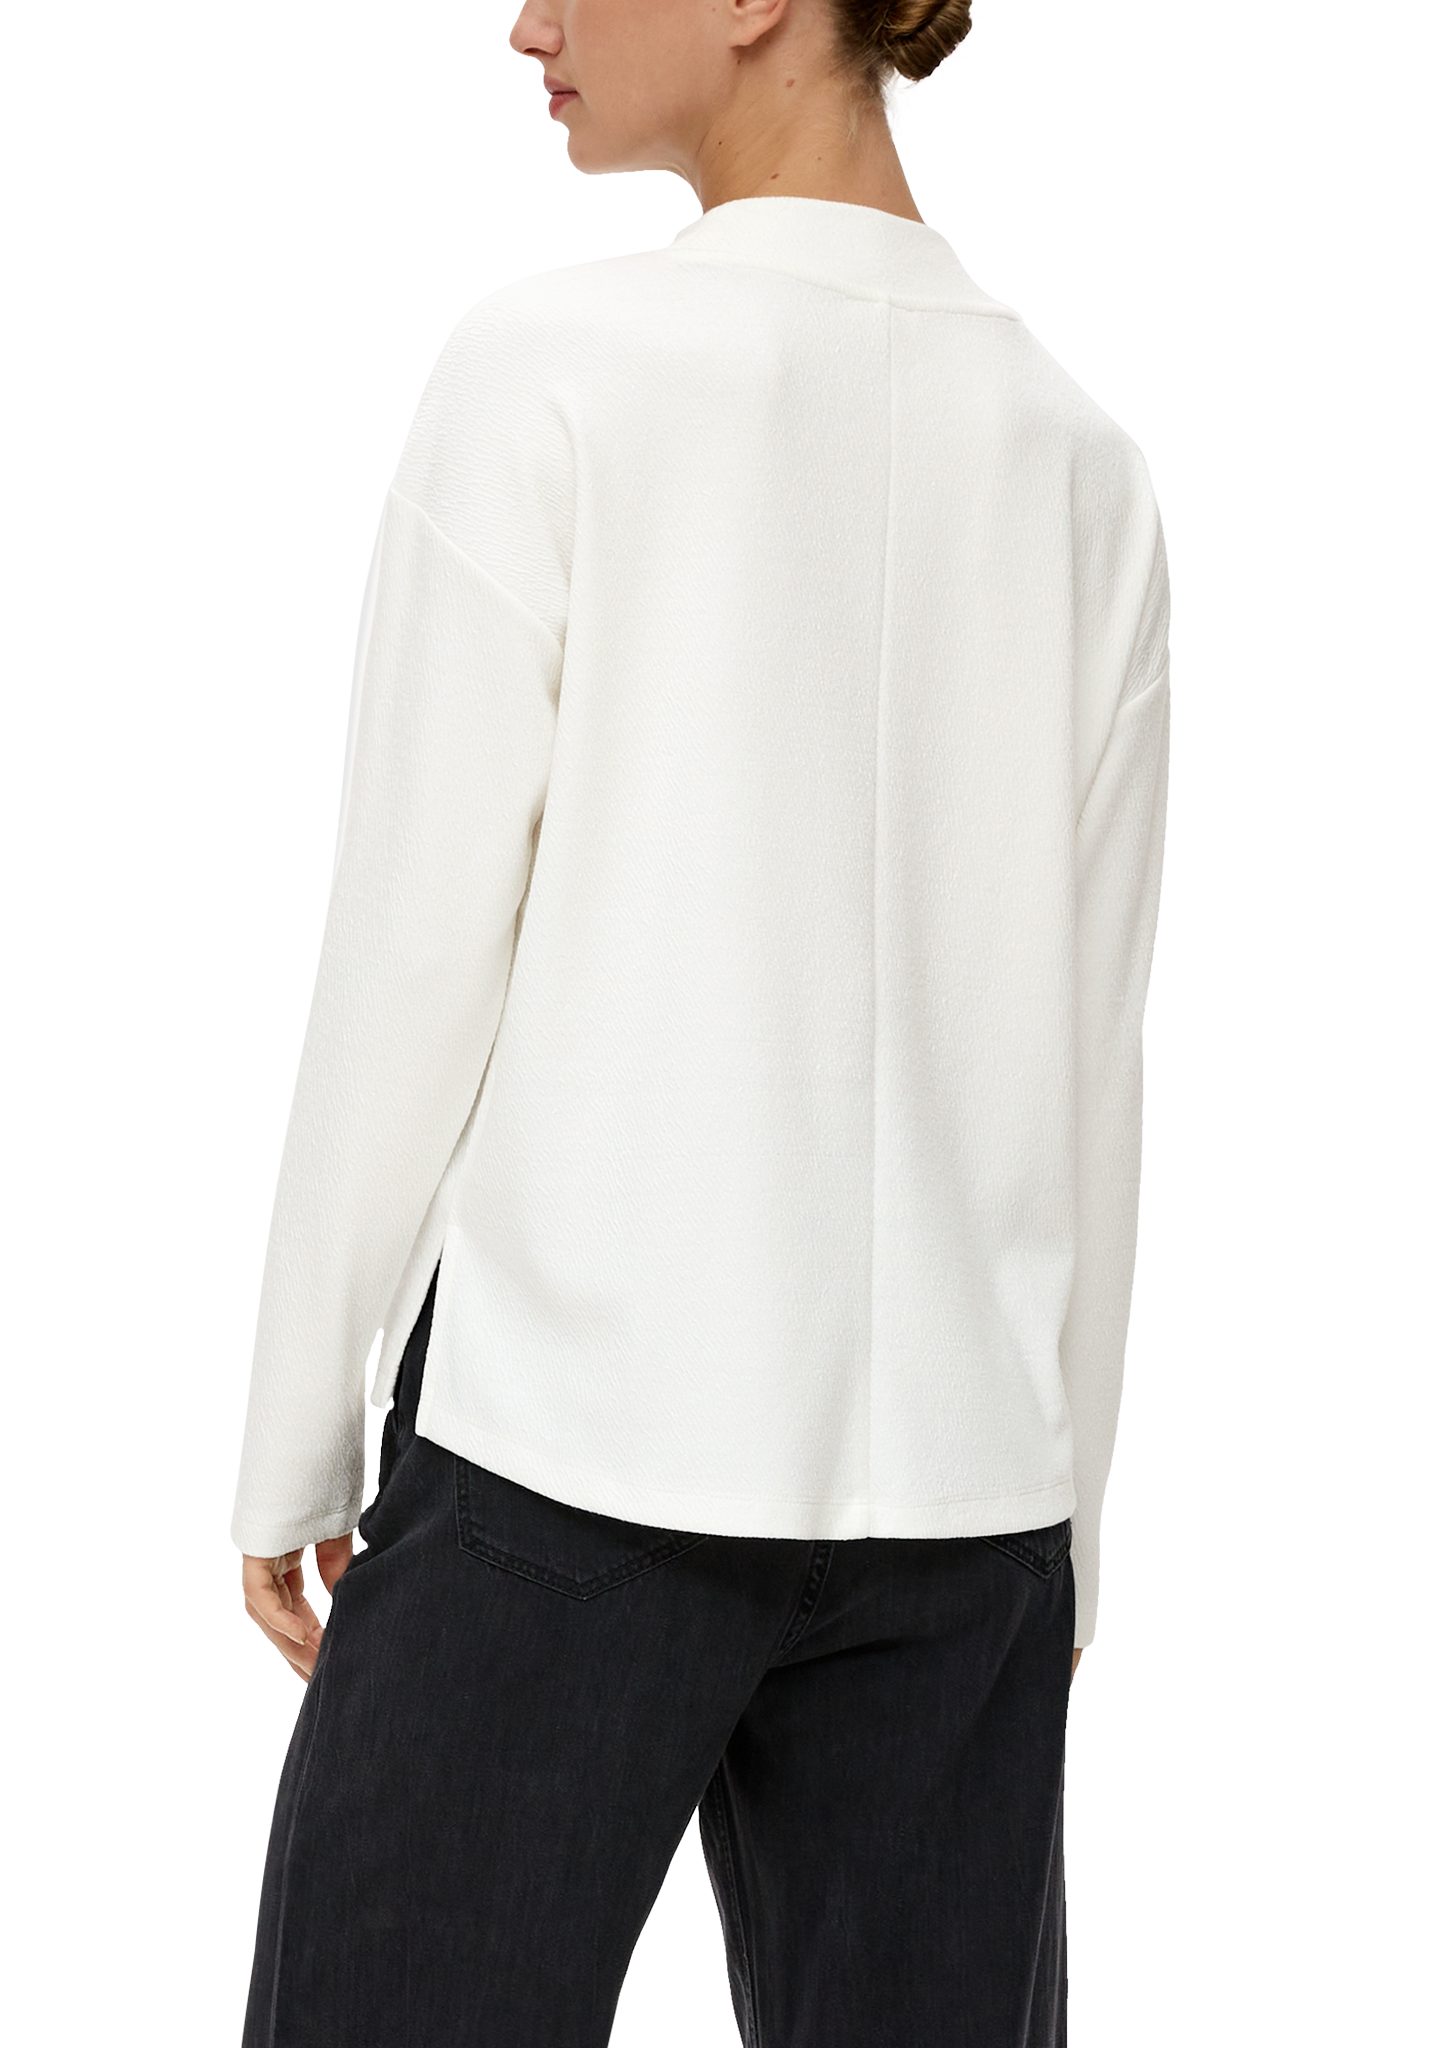 Doubleface-Sweatshirt ecru mit Teilungsnähte Musterstruktur Sweatshirt s.Oliver